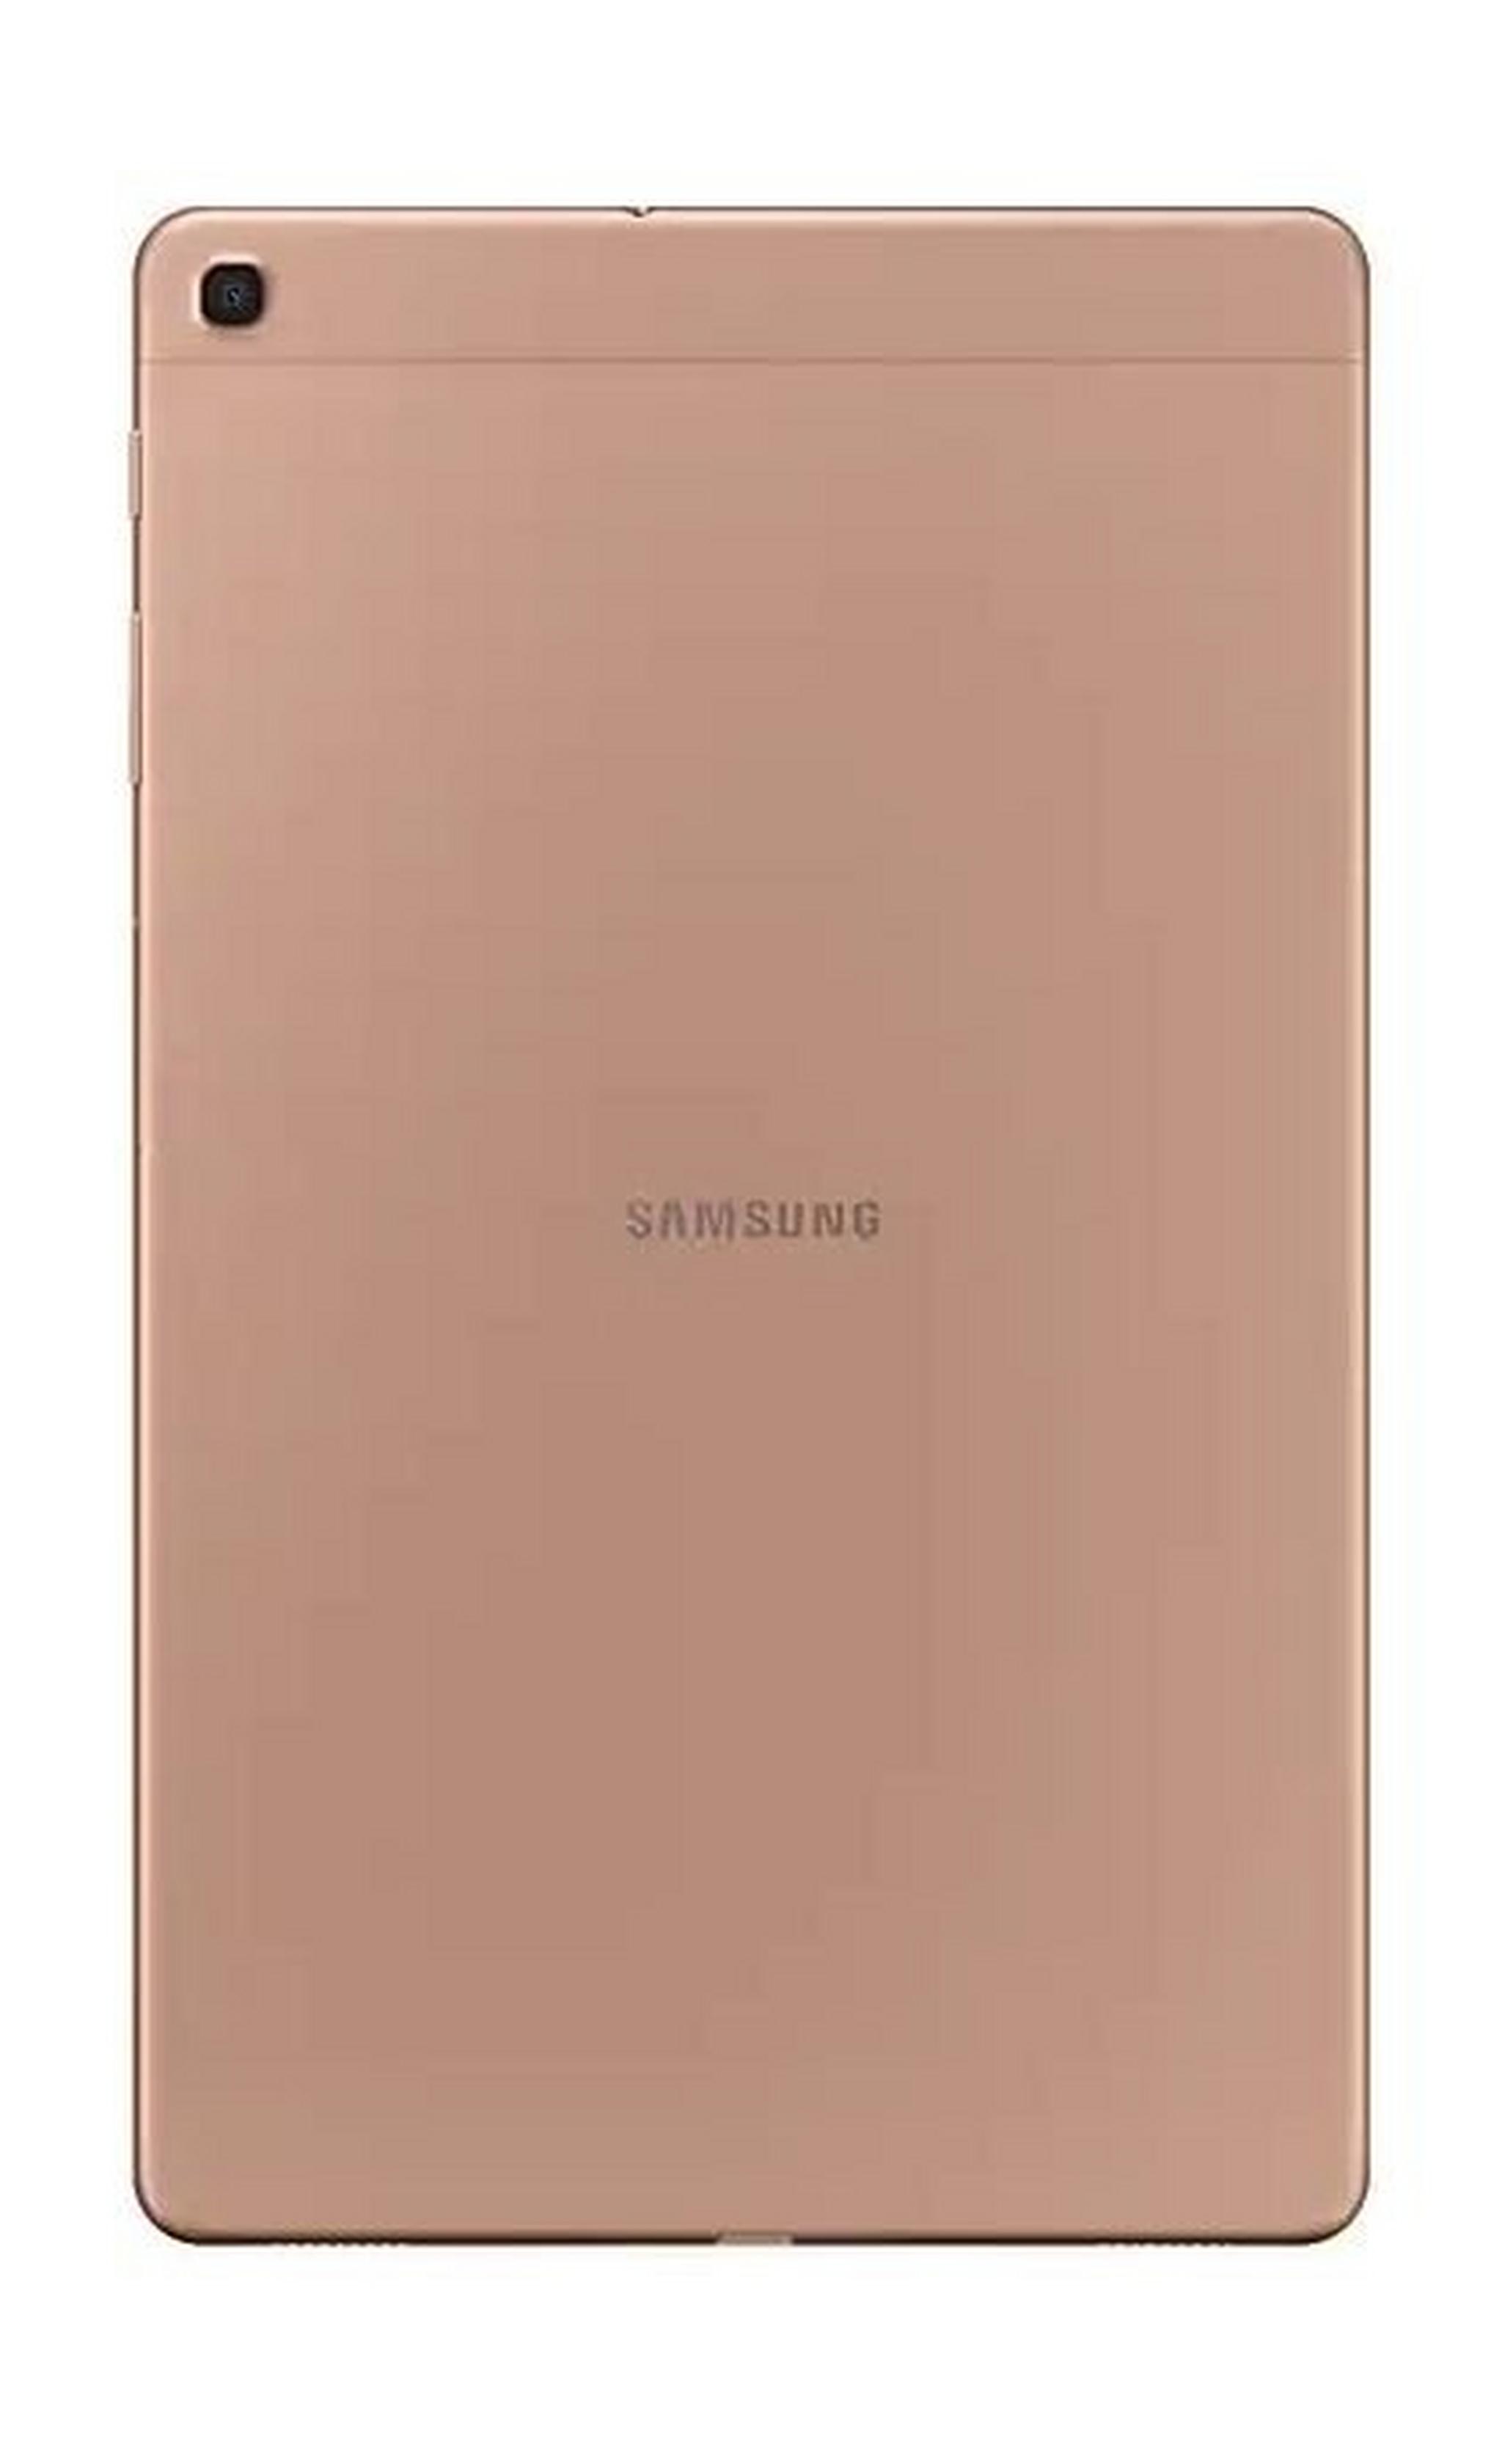 Samsung Galaxy Tab A 2019 10.1-inch 32GB 4G LTE Tablet - Gold